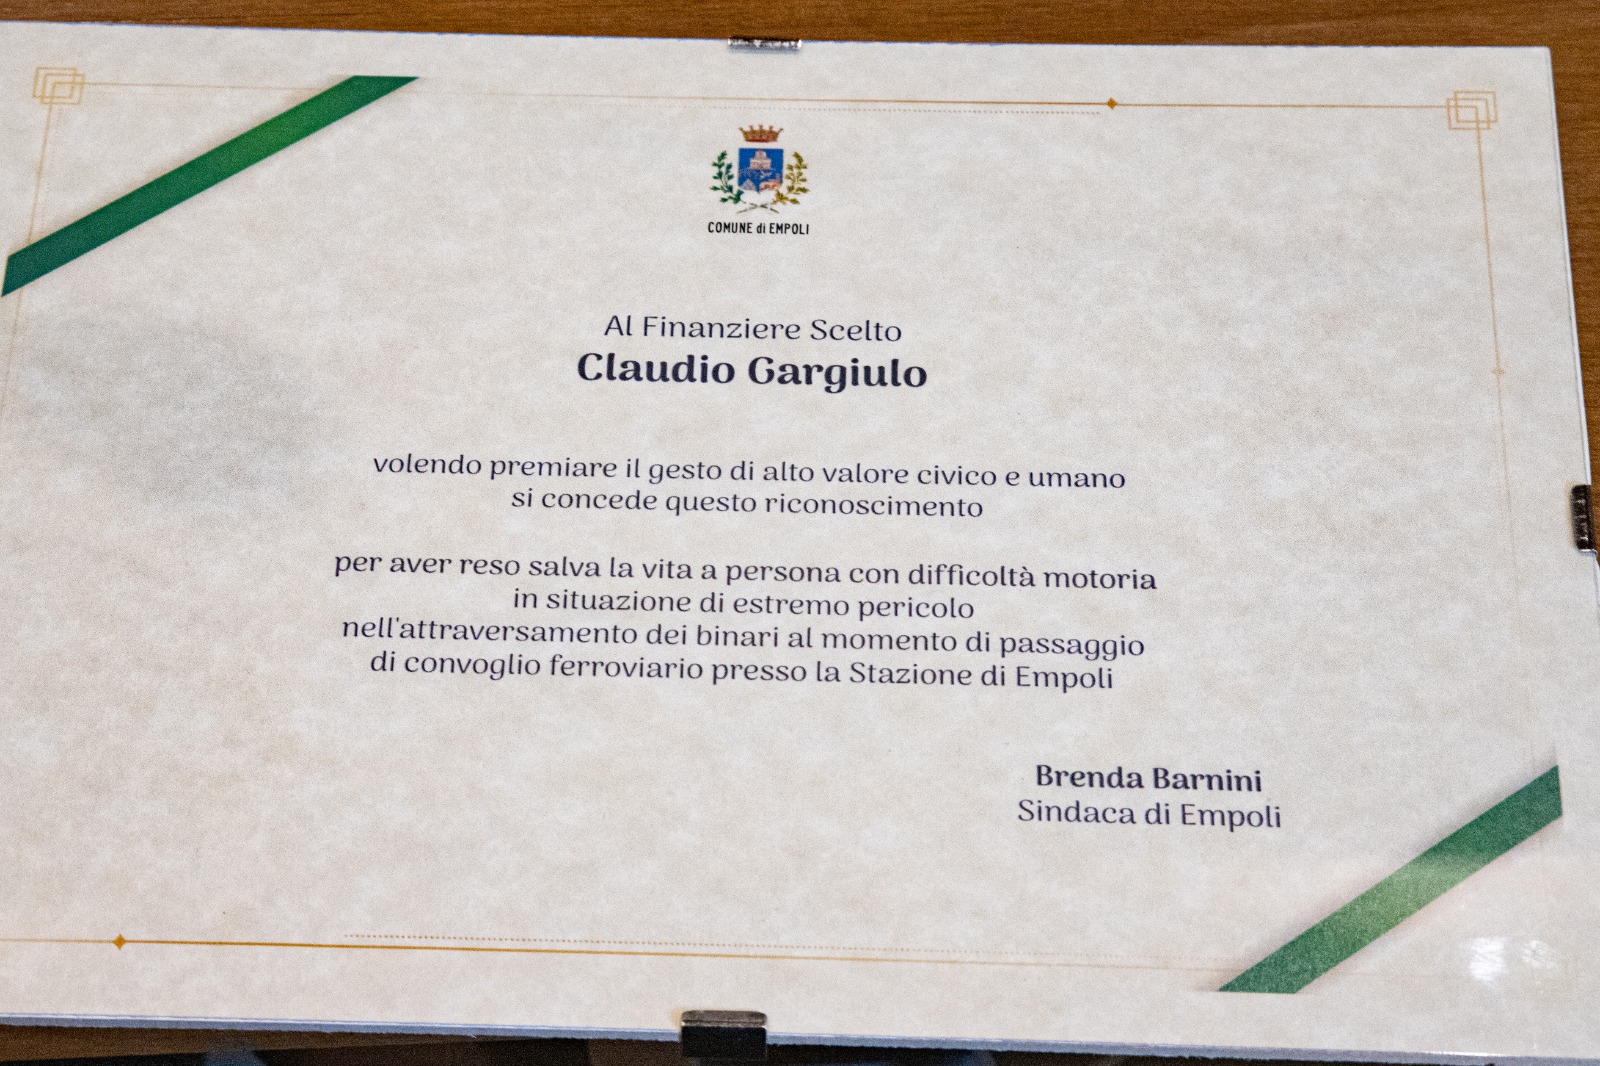 Pergamena di riconoscimento al finanziere scelto Claudio Gargiulo